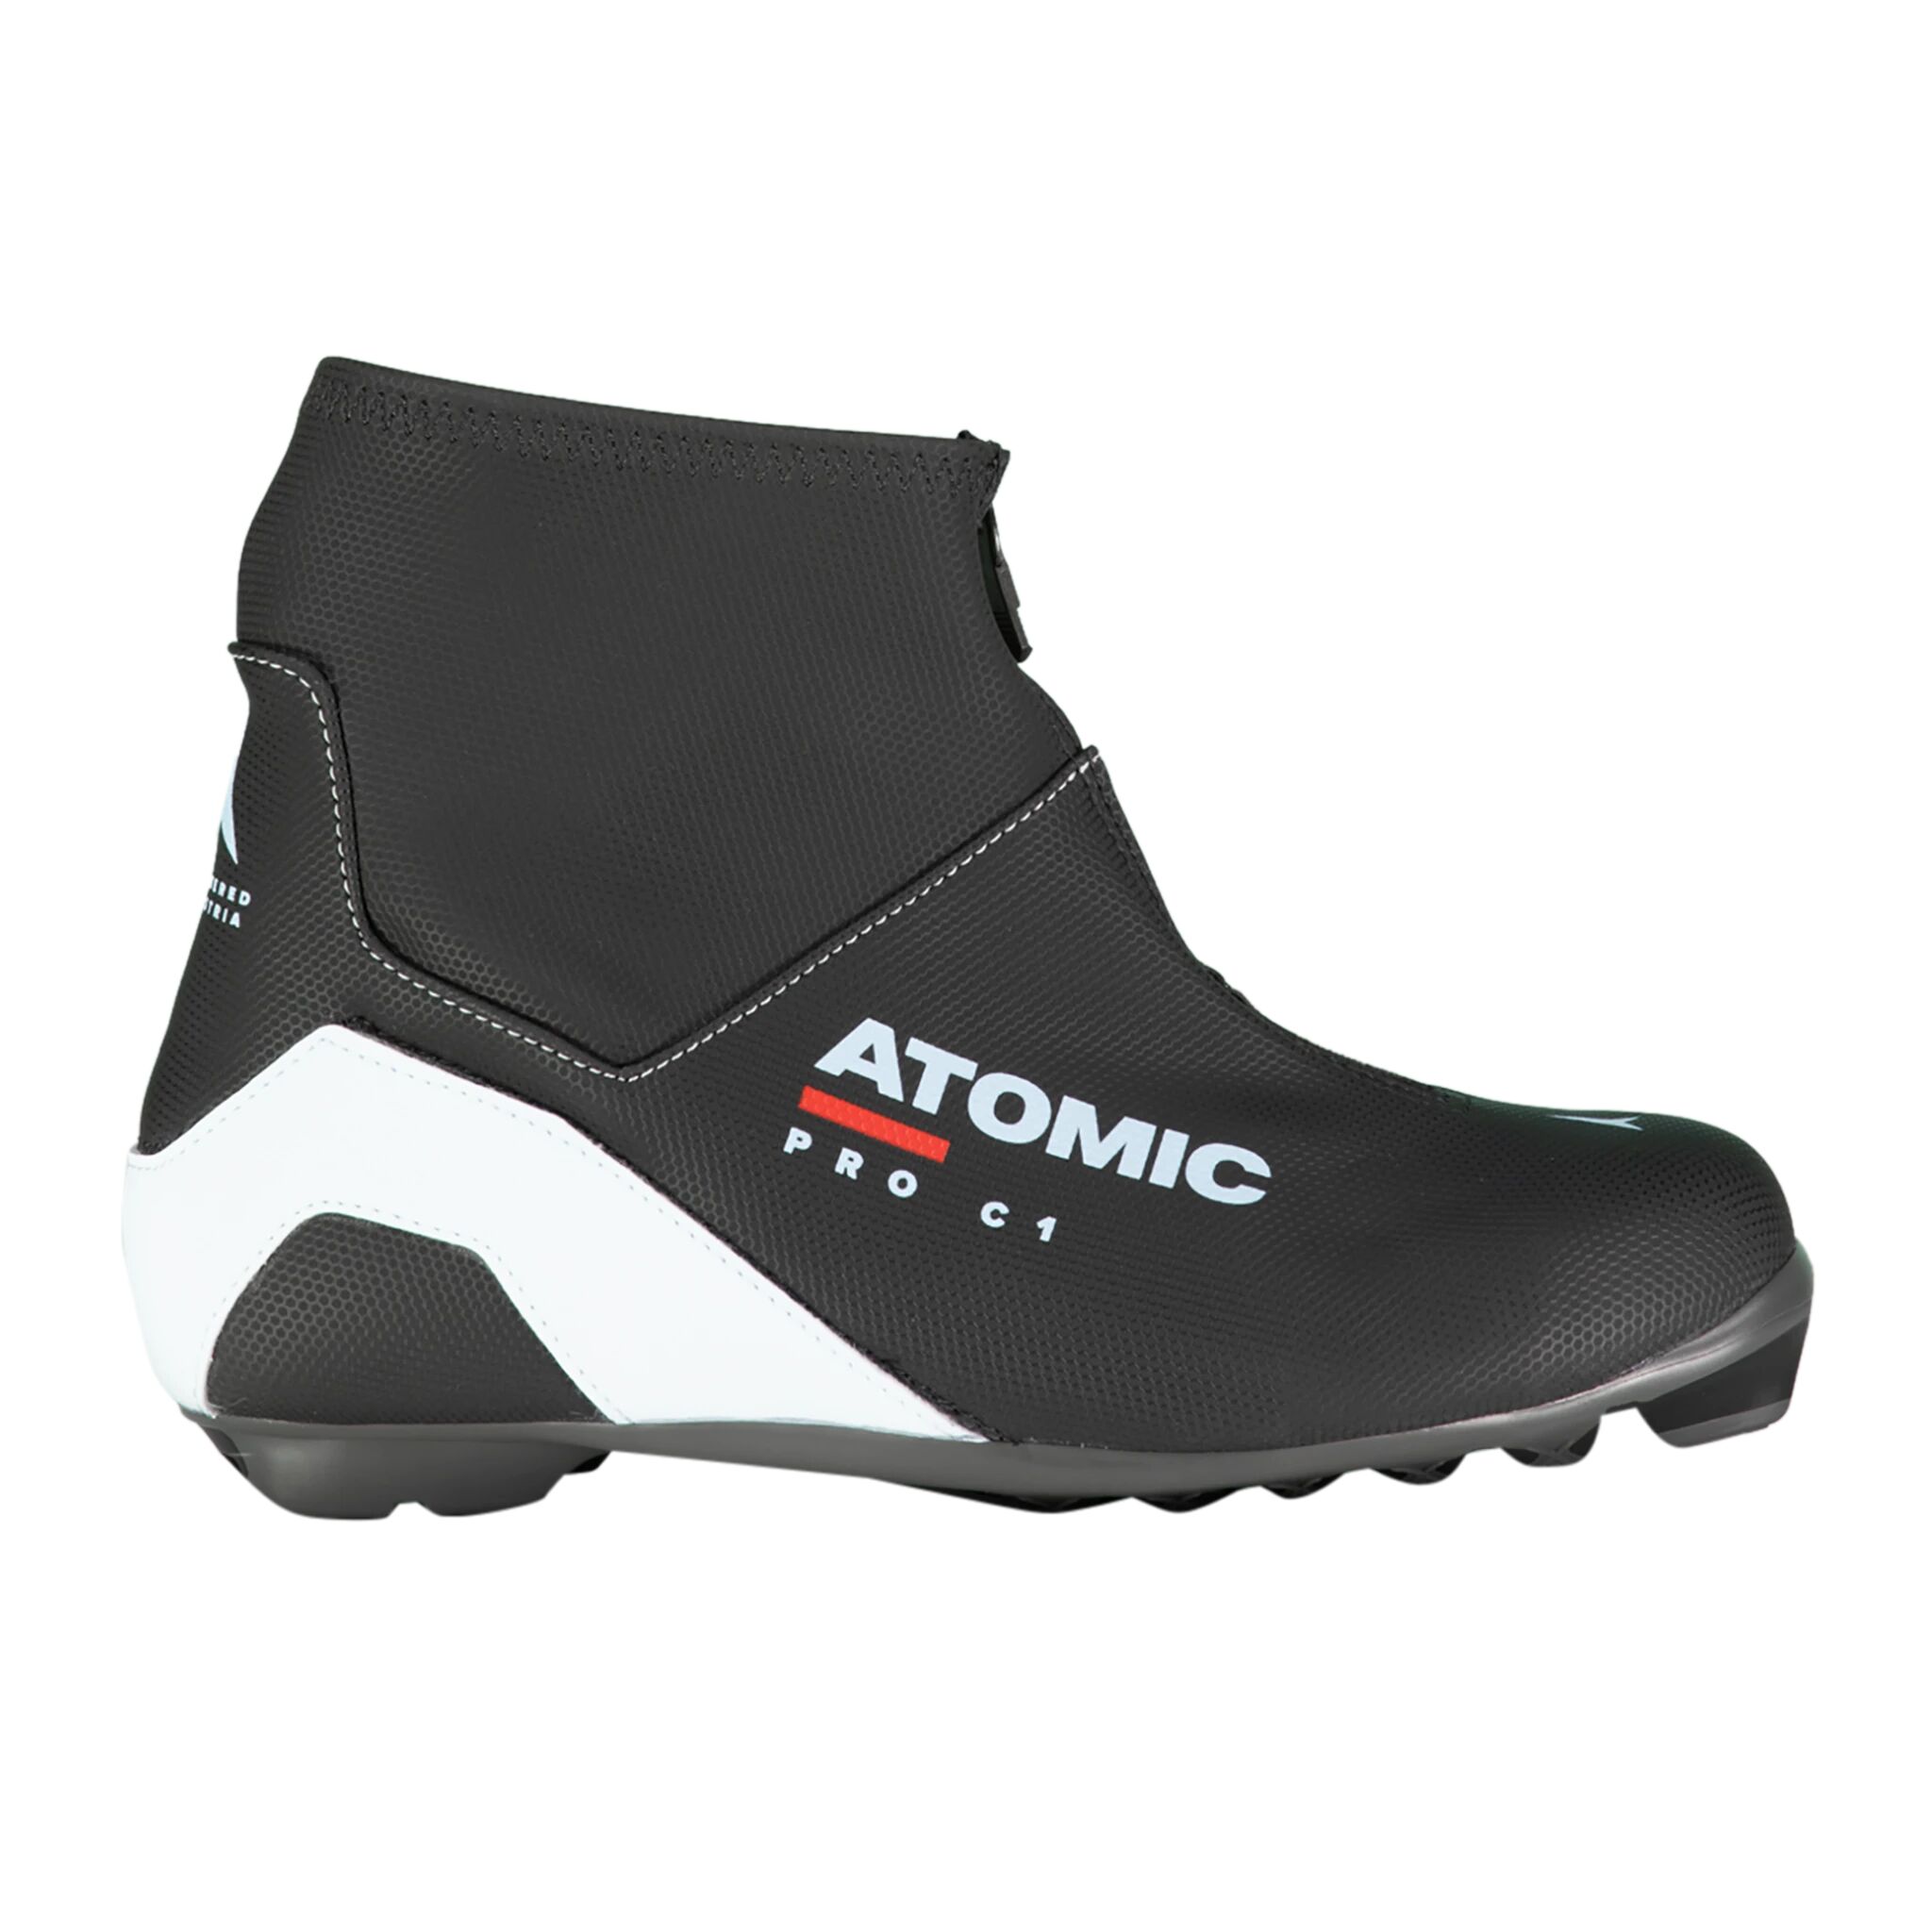 Atomic XC Boots Pro C1 ProLink 21/22, klassiskstøvel dame 6,5 (40) Dark Grey/Light Blue